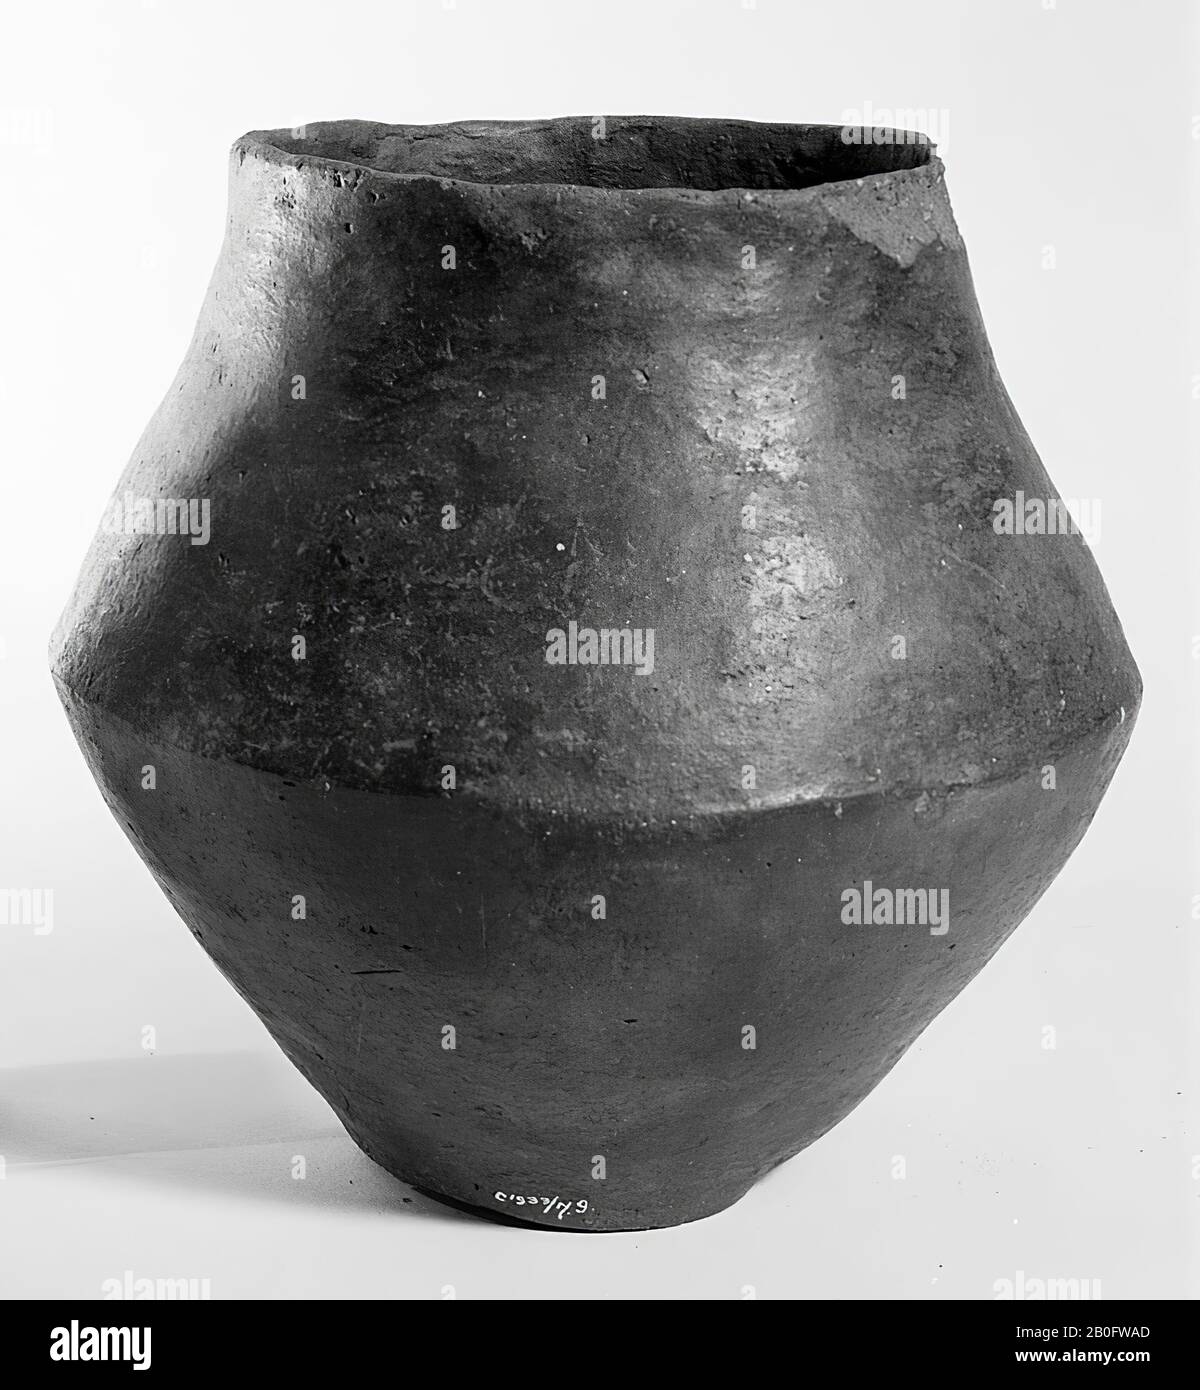 Doppia urna conica di terracotta marrone scuro, con fondo piatto. Trovato con c 1933 Foto Stock